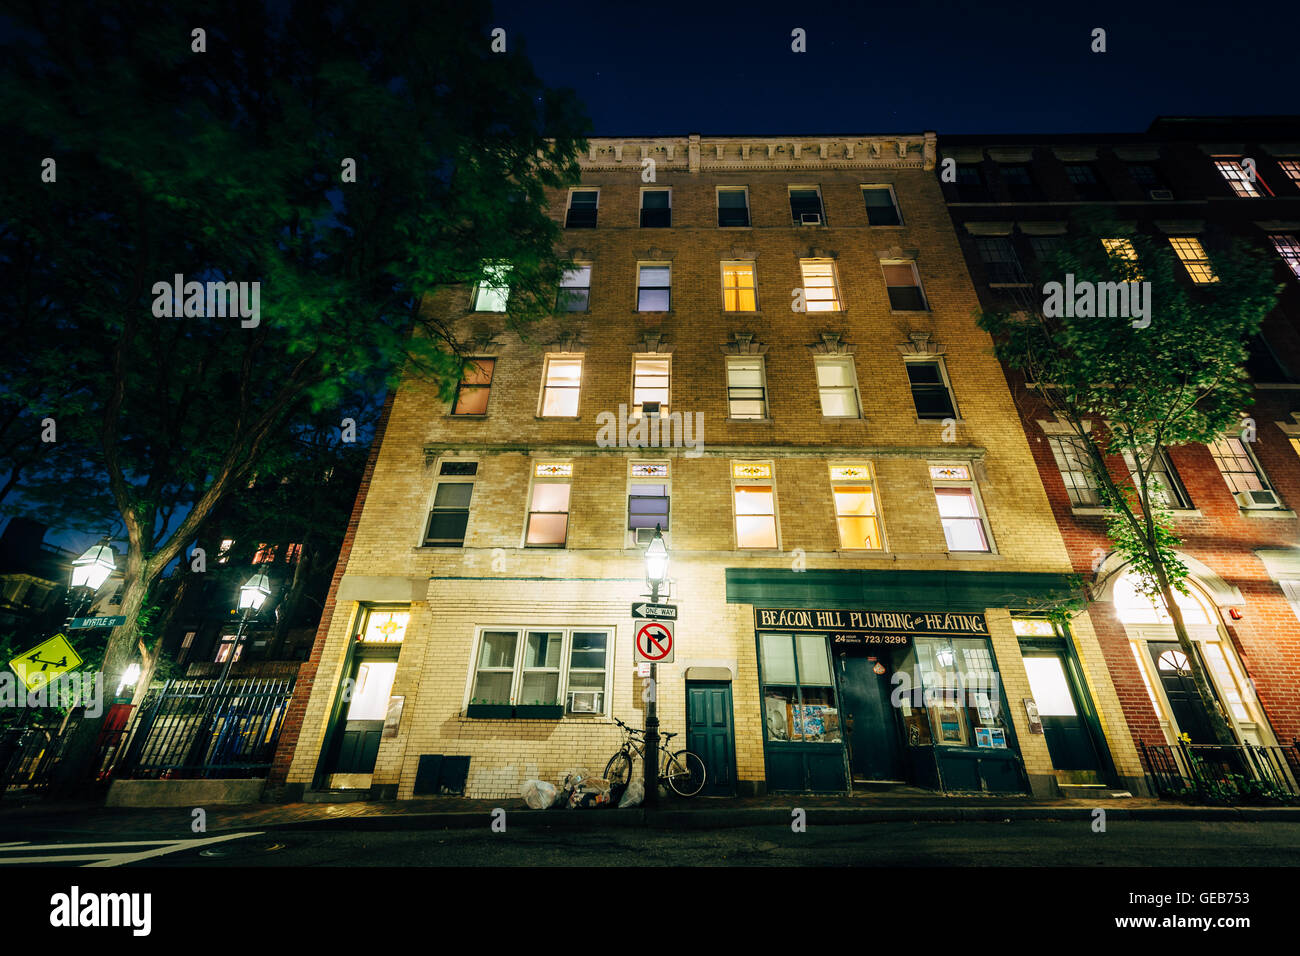 Buildings on Myrtle Street at night, in Beacon Hill, Boston, Massachusetts. Stock Photo